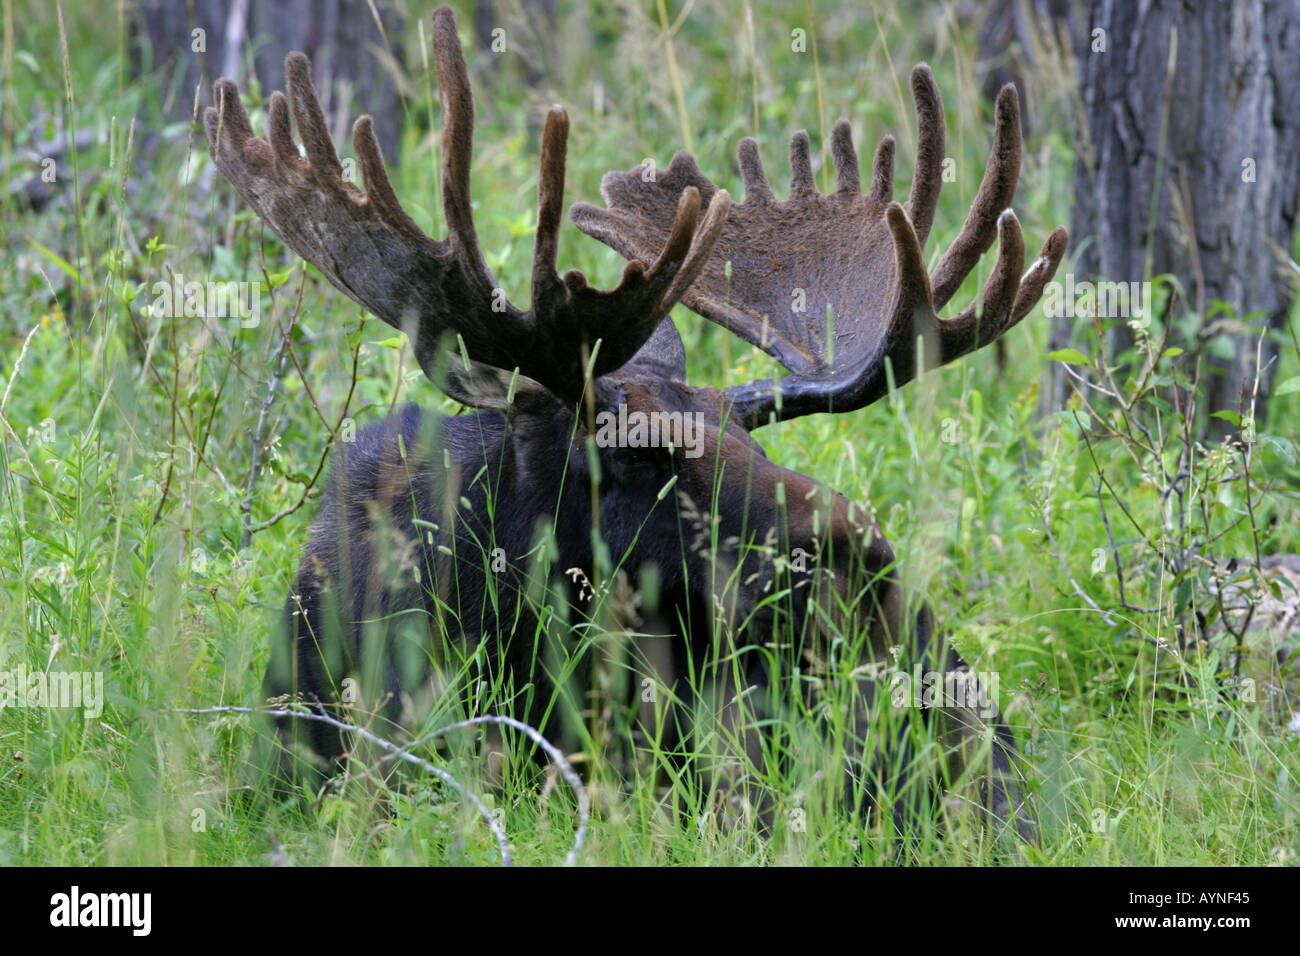 Bull Moose in Samt Stockfoto